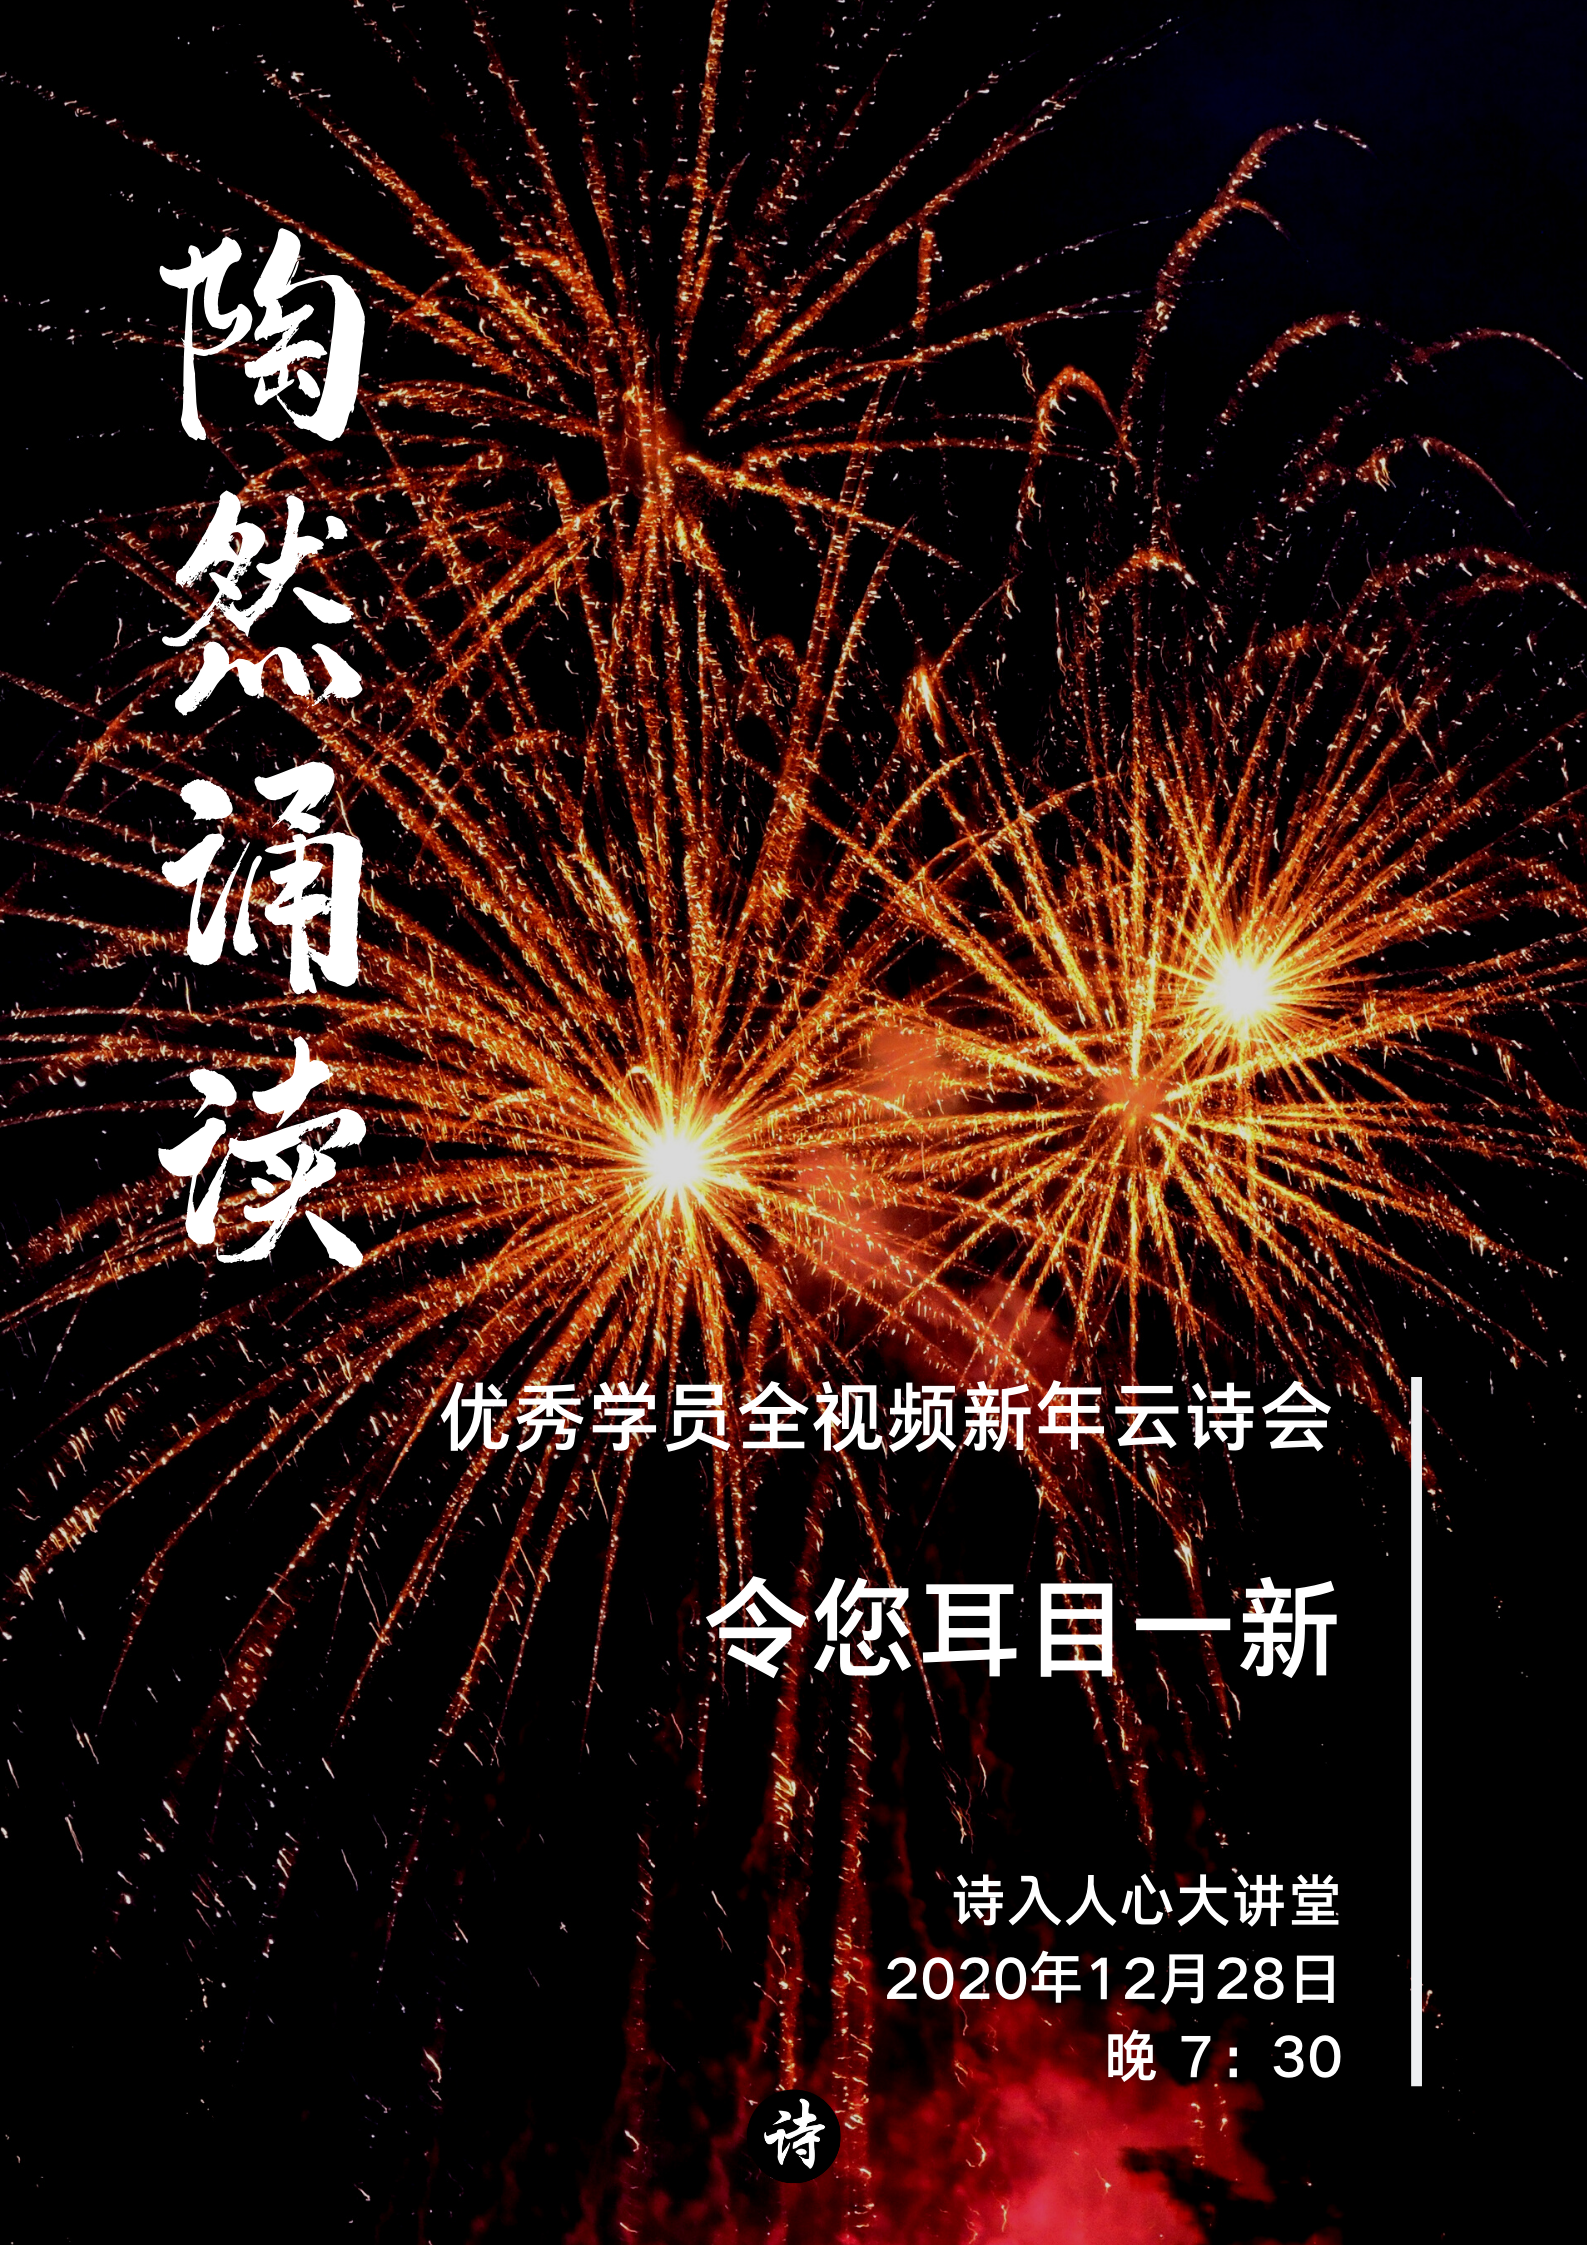 橙黑色烟花照片活动宣传中文海报 (1).png